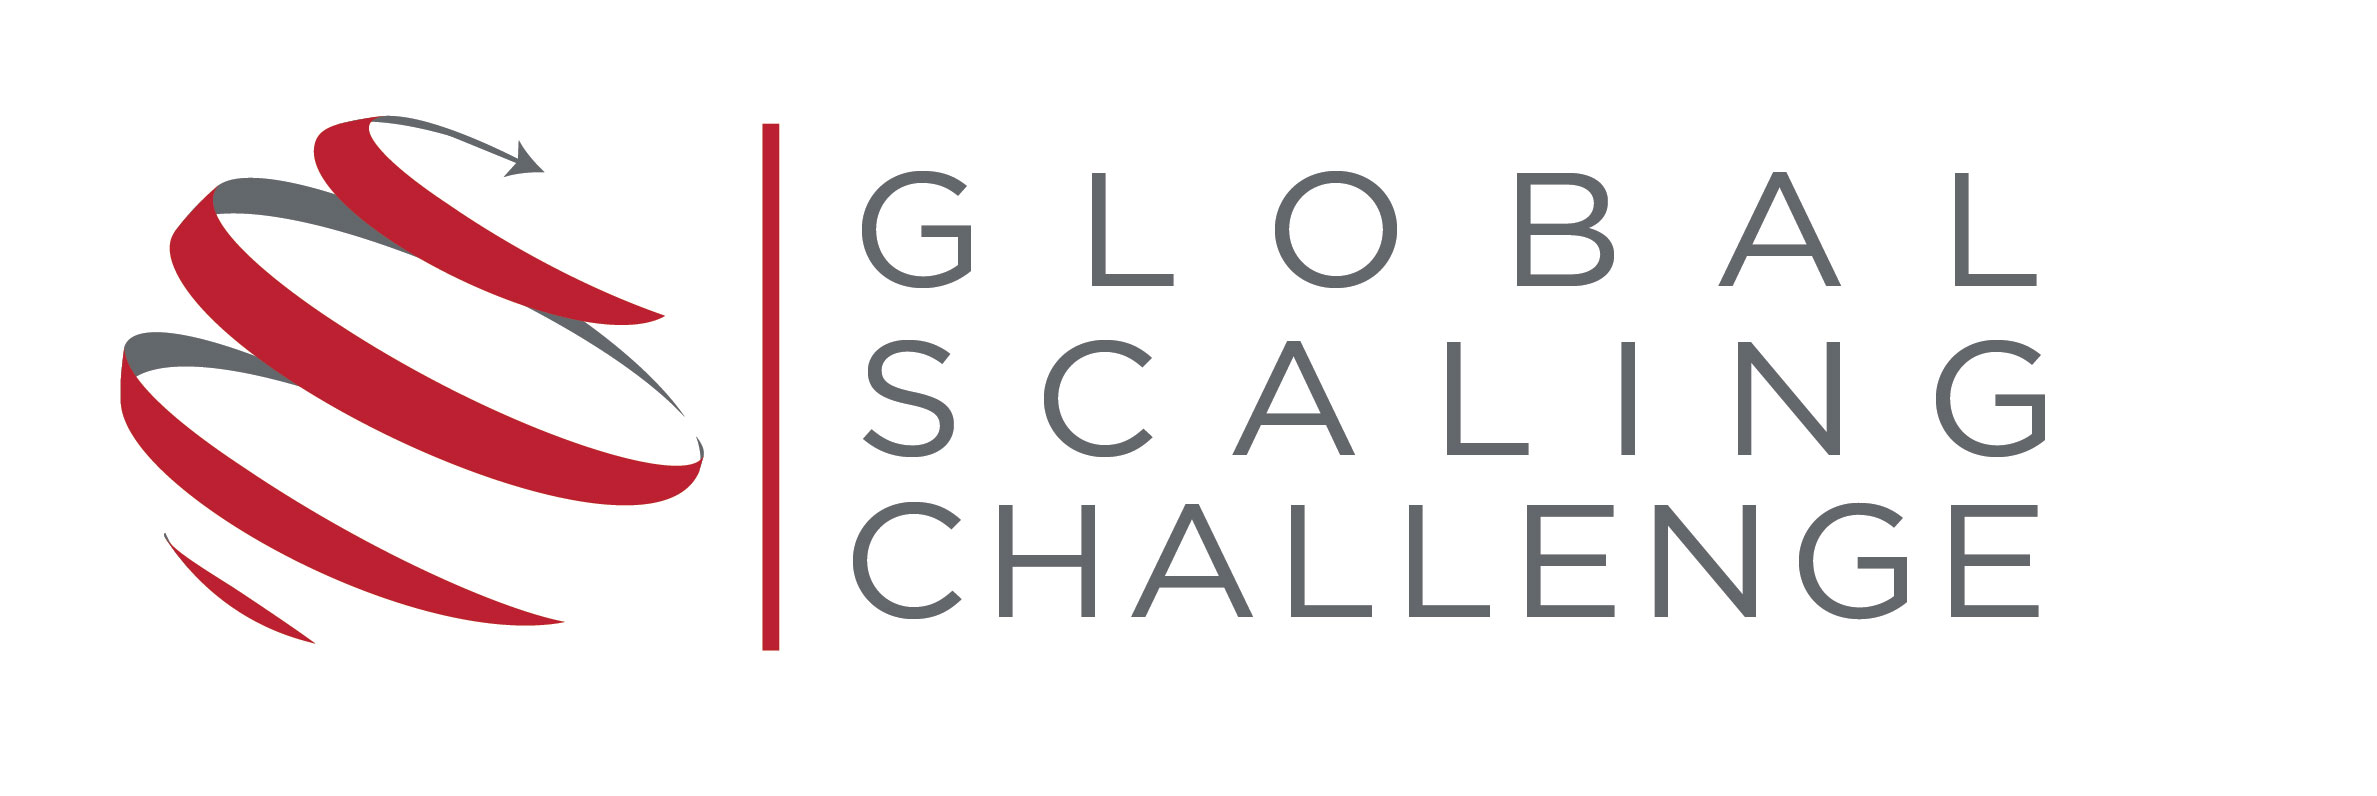 Global Scaling Challenge logo